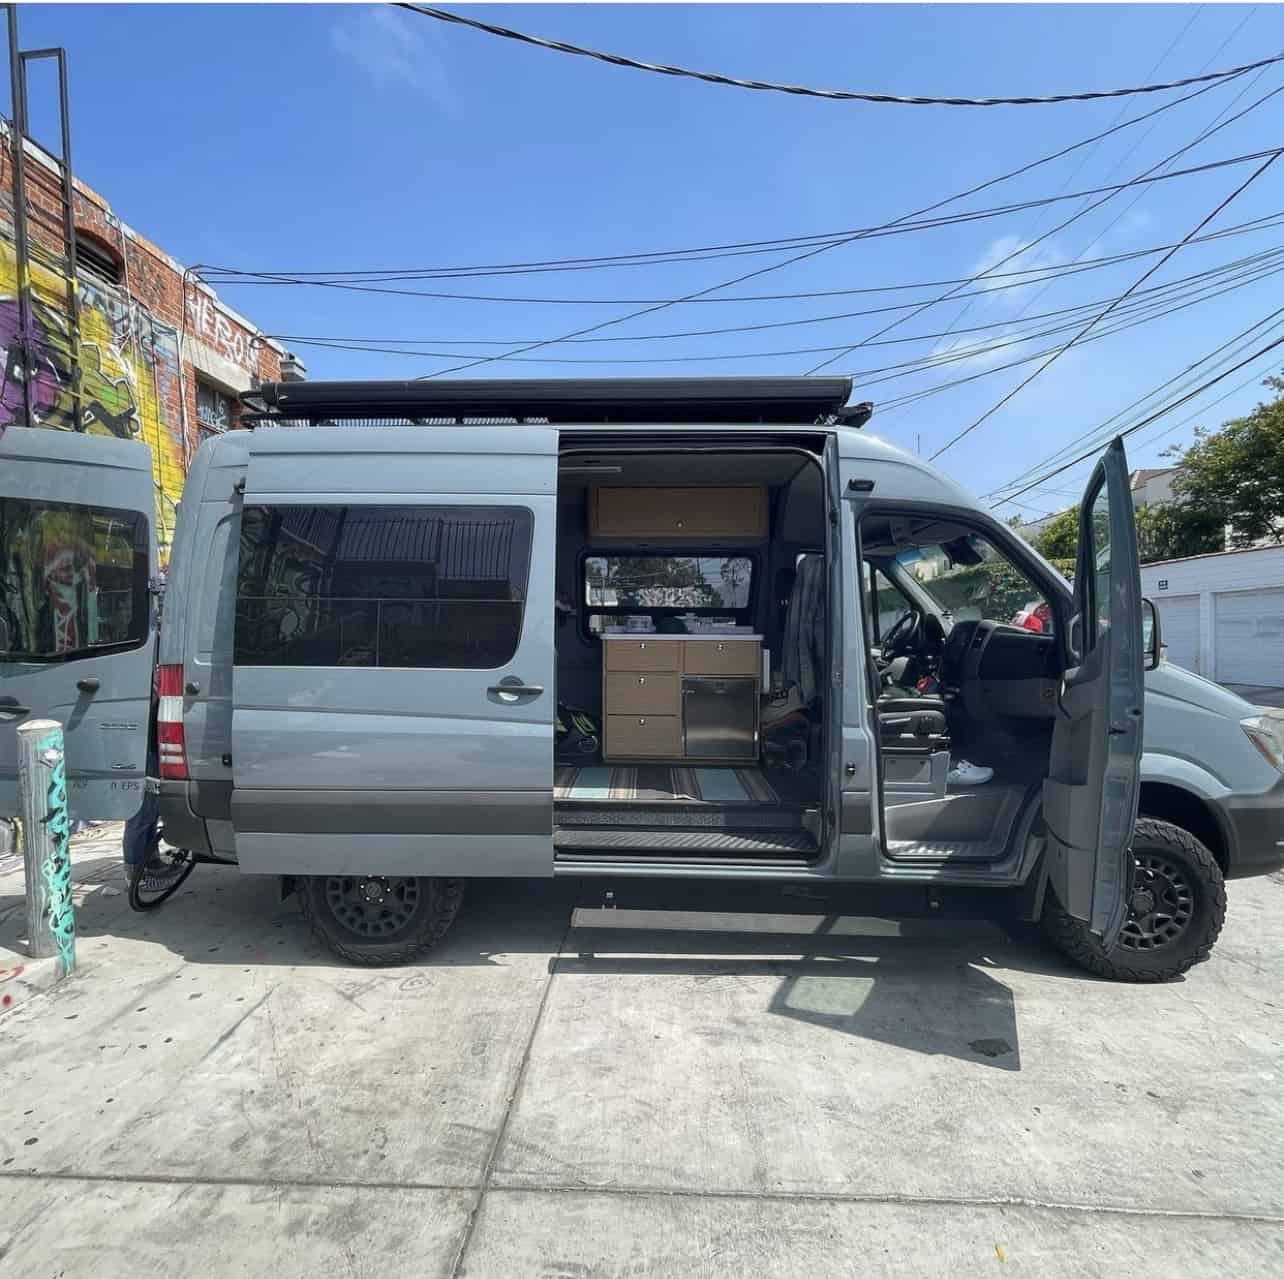 2017 Mercedes Sprinter For Sale in Los Angeles, California - Van Viewer Sprinter Camper Van For Sale Los Angeles